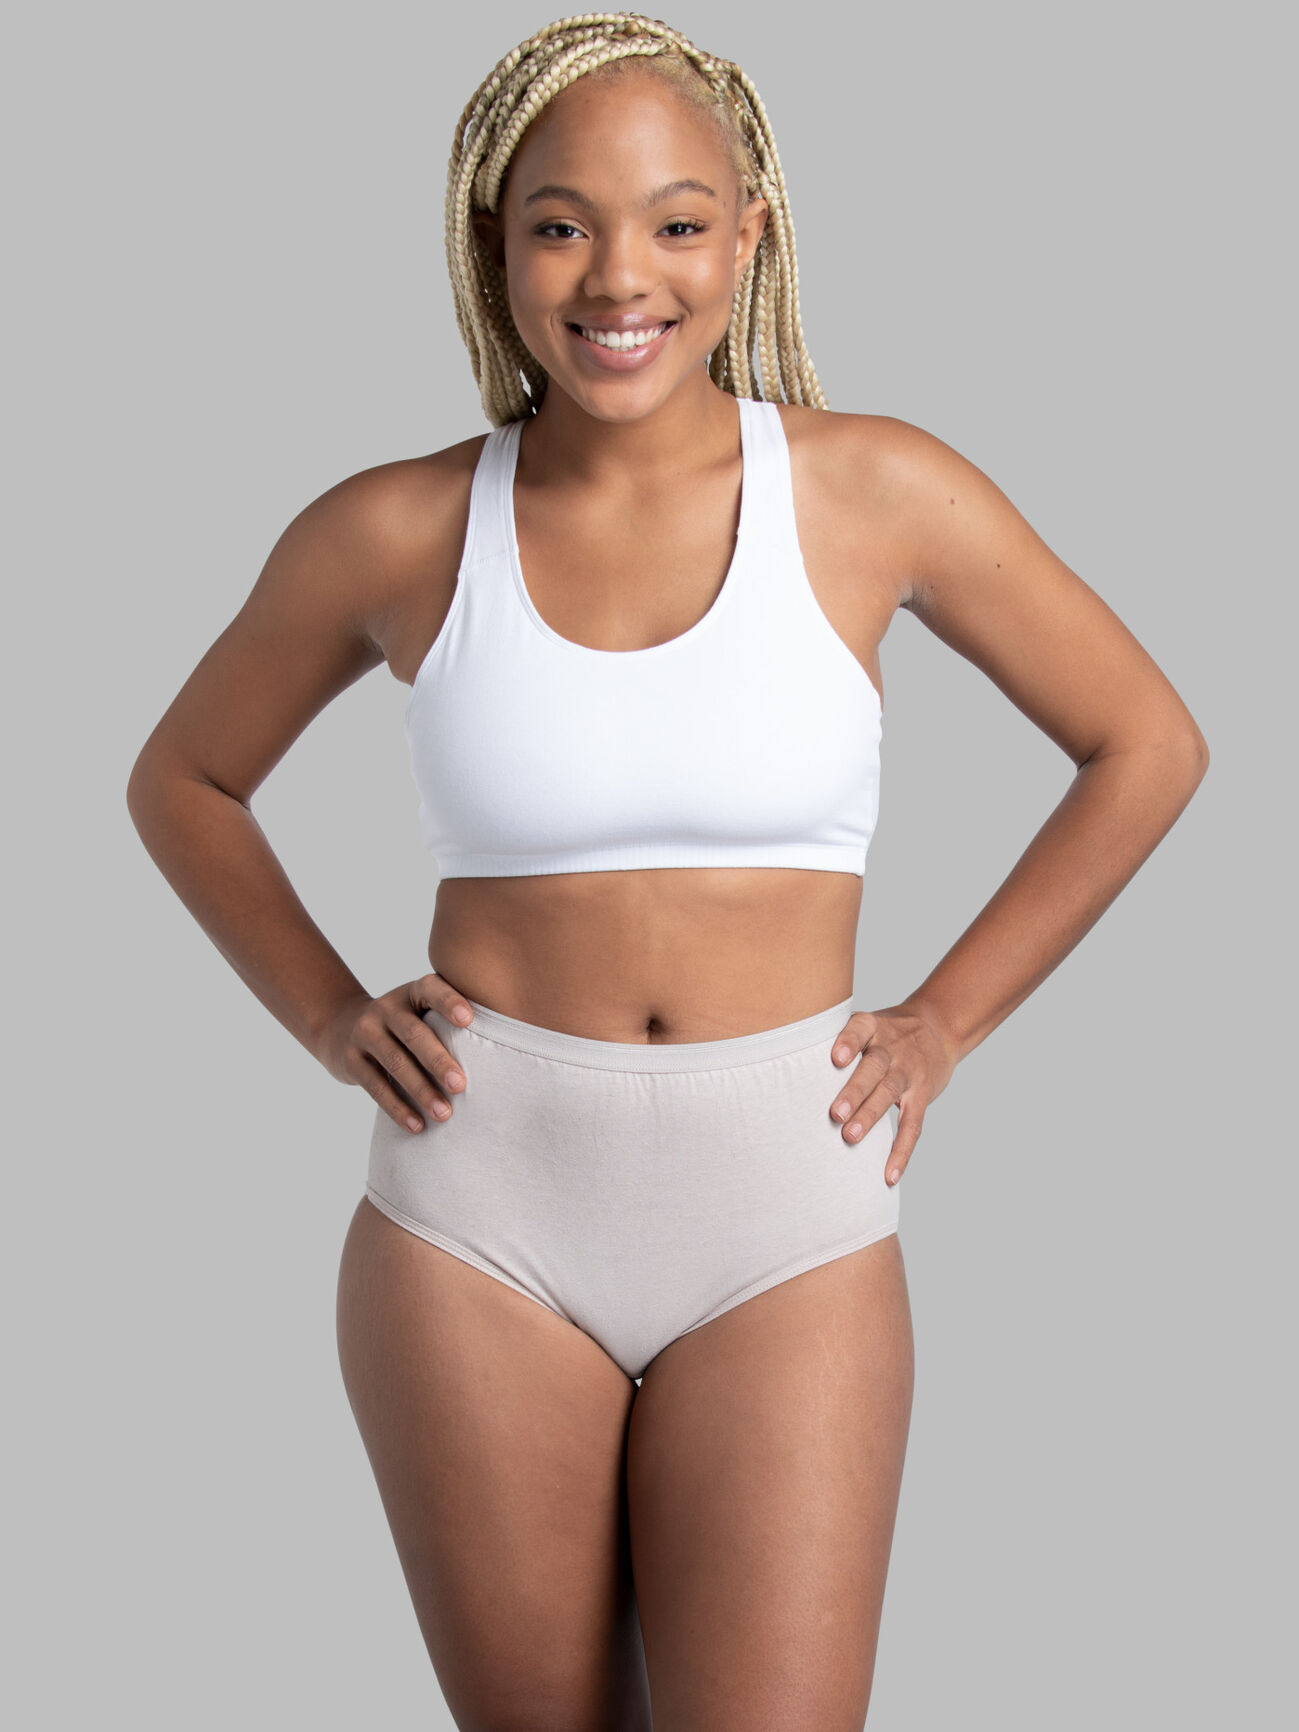 Ladies Briefs Knickers Women's Underwear Full 100% Cotton Comfort Fit Size  M-3XL